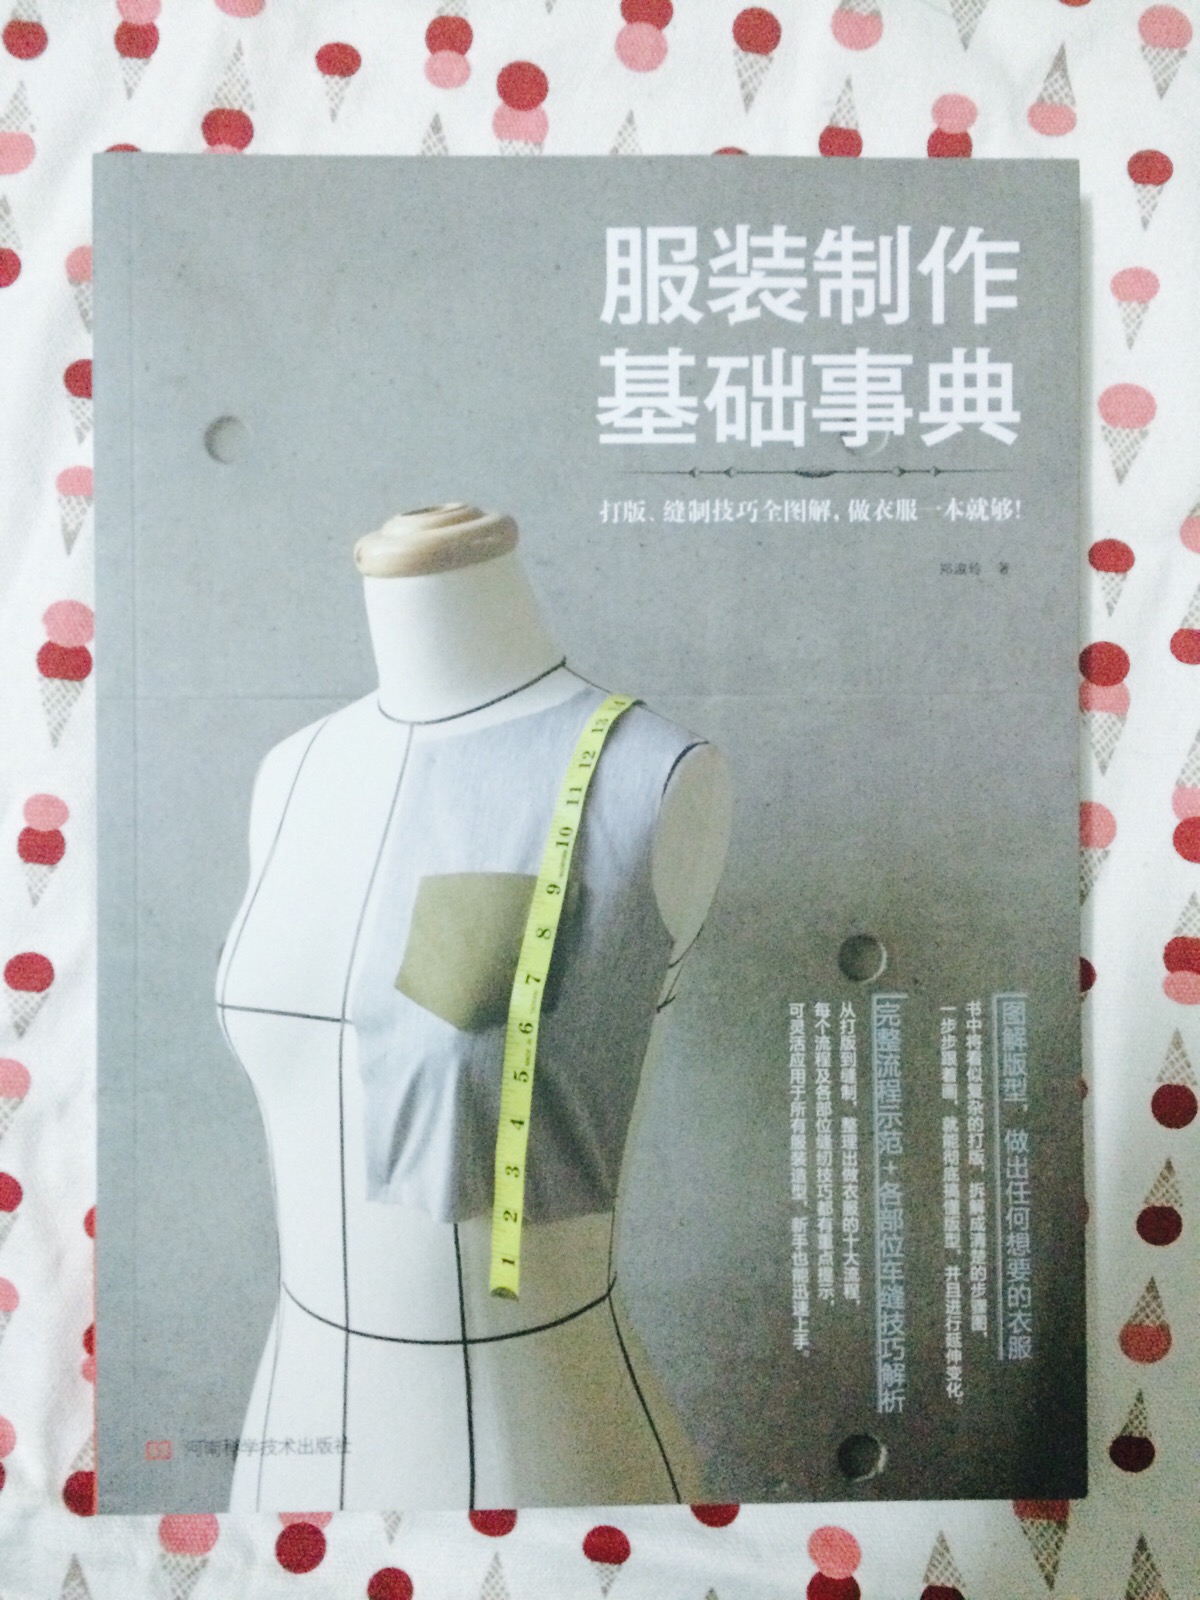 《服装制作基础事典》——自学的一本书,教了挺多的制衣方法和基础